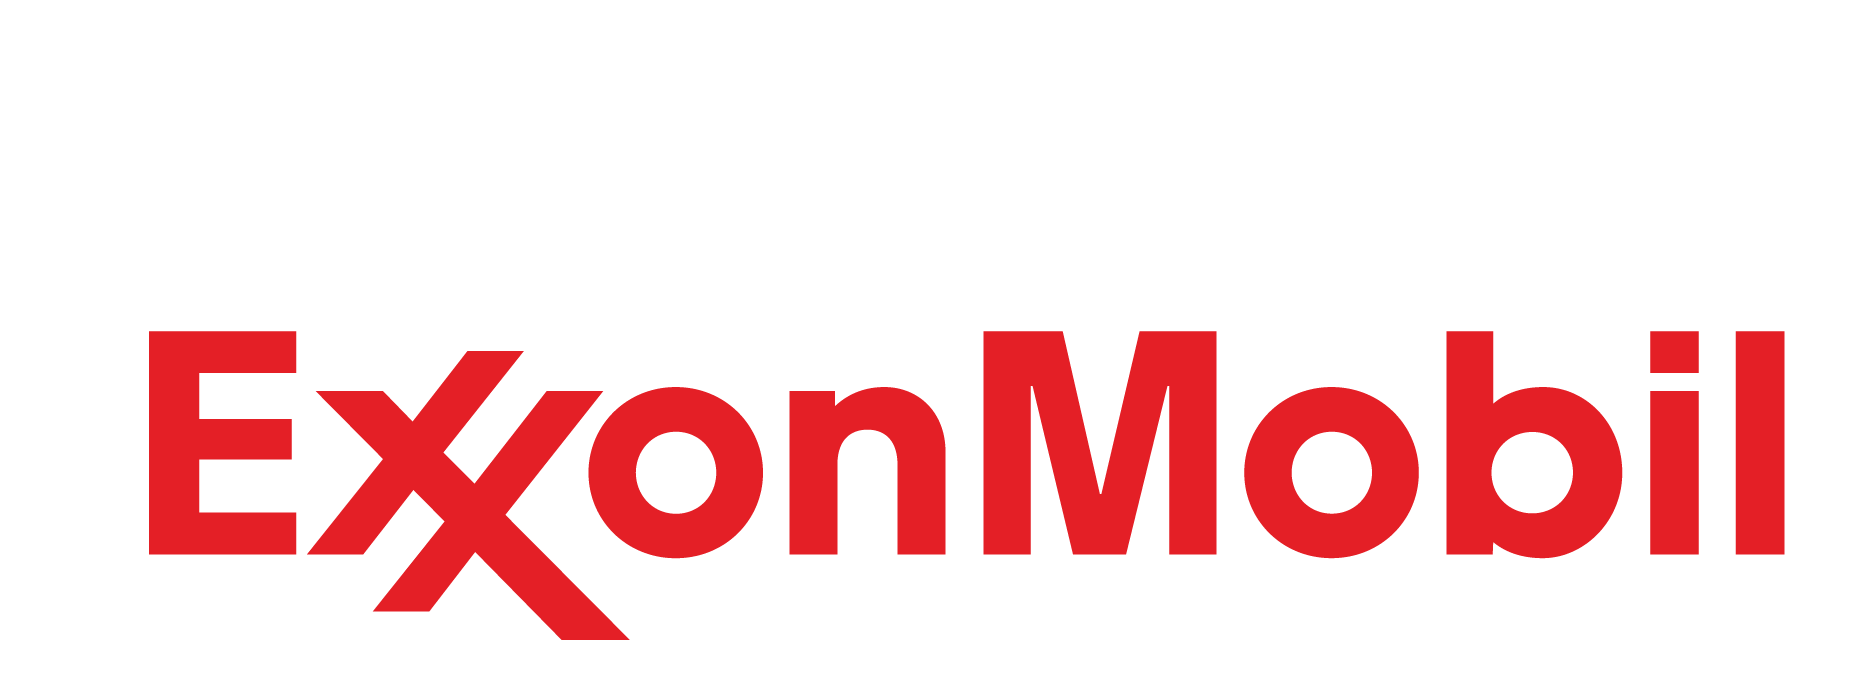 Exxon Mobil Logo - QTF